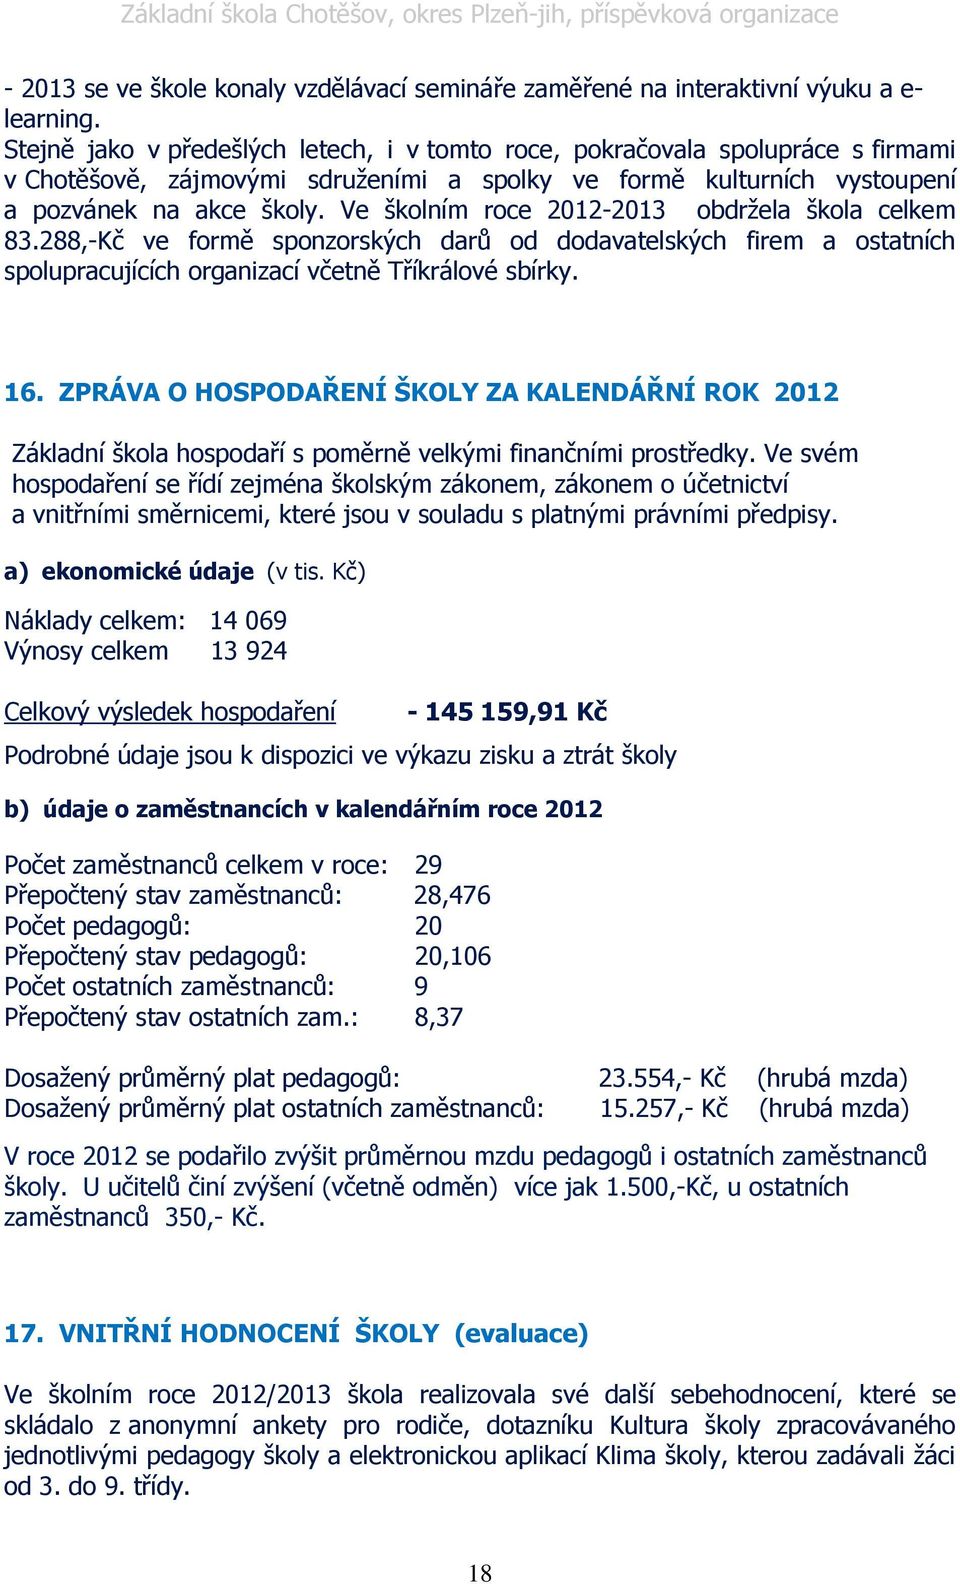 Ve školním roce 2012-2013 obdrţela škola celkem 83.288,-Kč ve formě sponzorských darů od dodavatelských firem a ostatních spolupracujících organizací včetně Tříkrálové sbírky. 16.